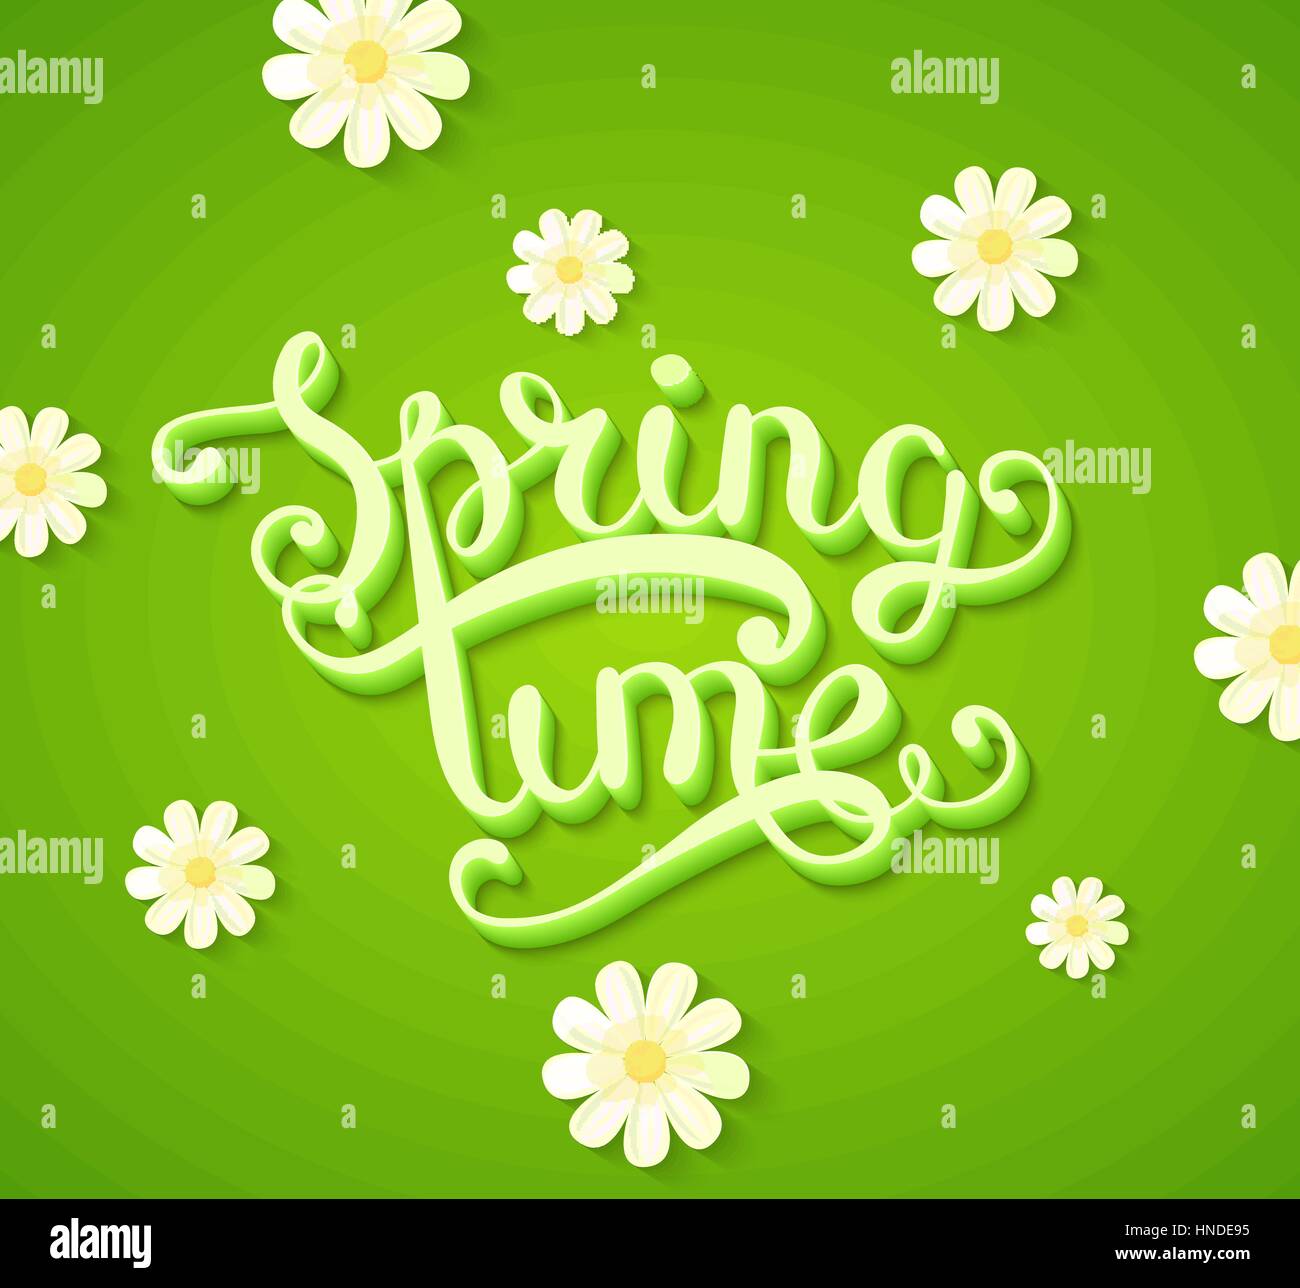 Frühling Typografie Titelkonzept in 3D mit langen Schatten dekoriert mit Blumen auf grünen Hintergrund. Realistische Vektor-Illustration Stock Vektor